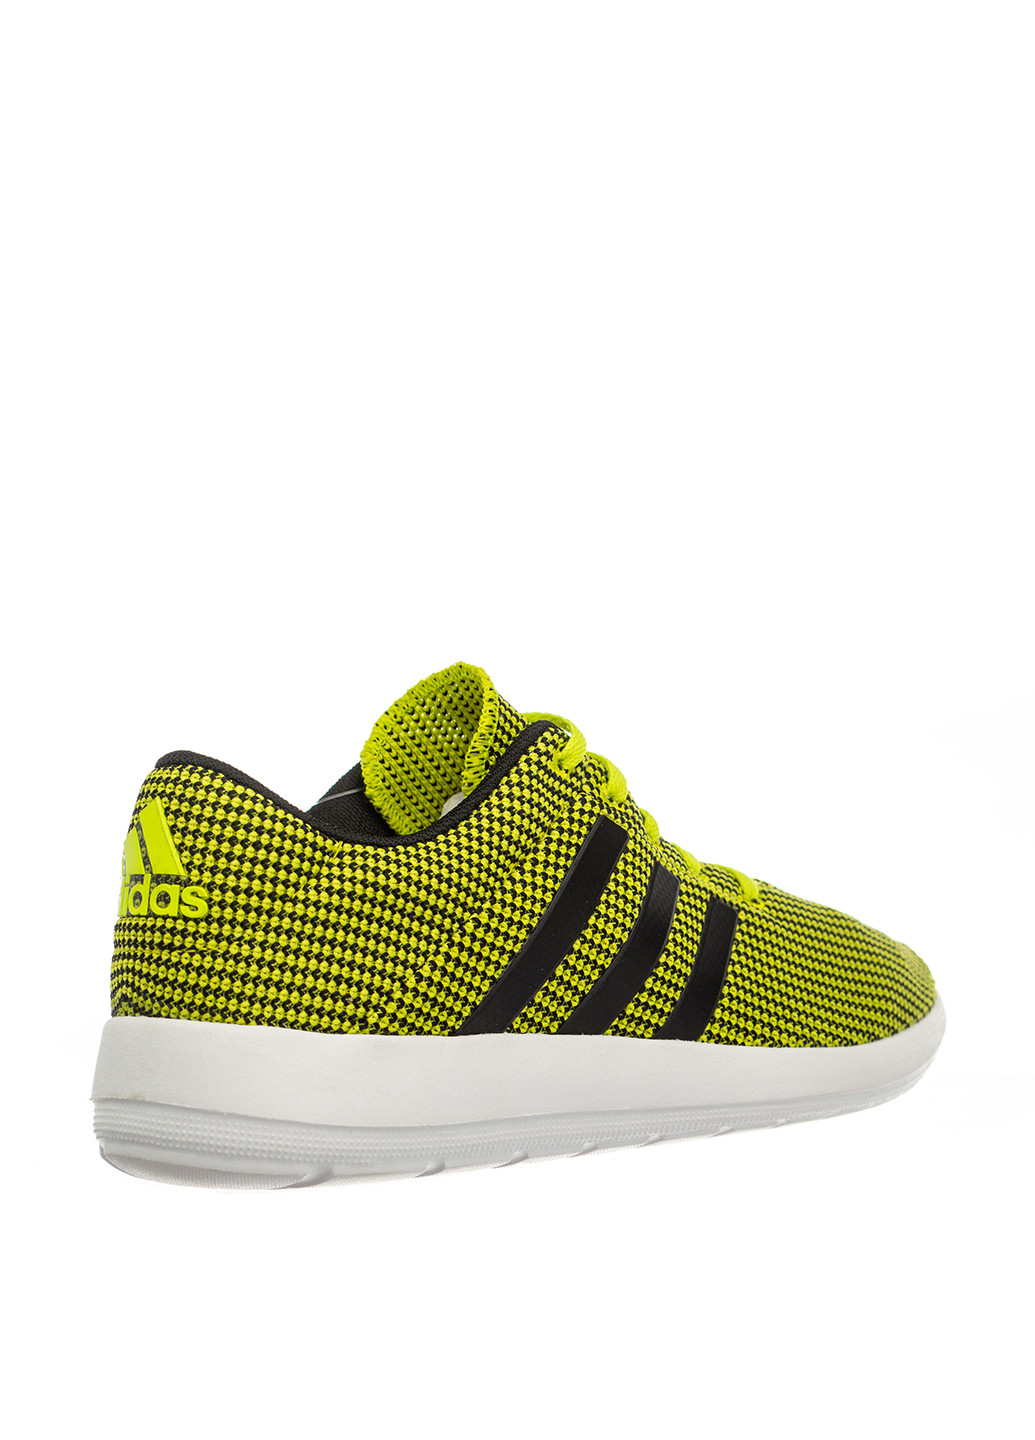 Лимонно-зеленые всесезонные кроссовки adidas